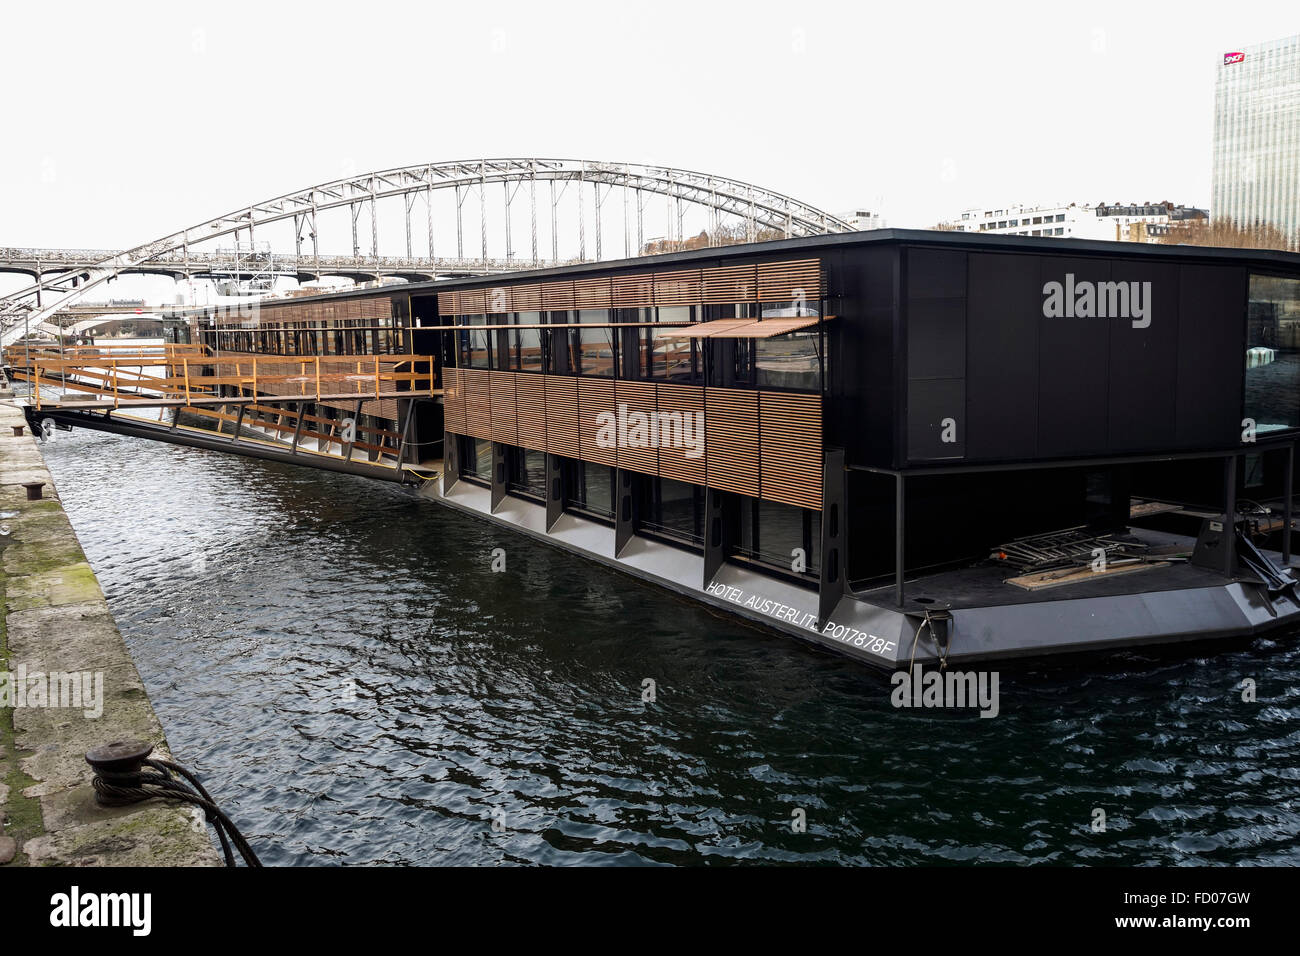 Floating Hotel Austerltz, Quai d'Austerlitz, Seine river, still under construction, Paris, France. Stock Photo